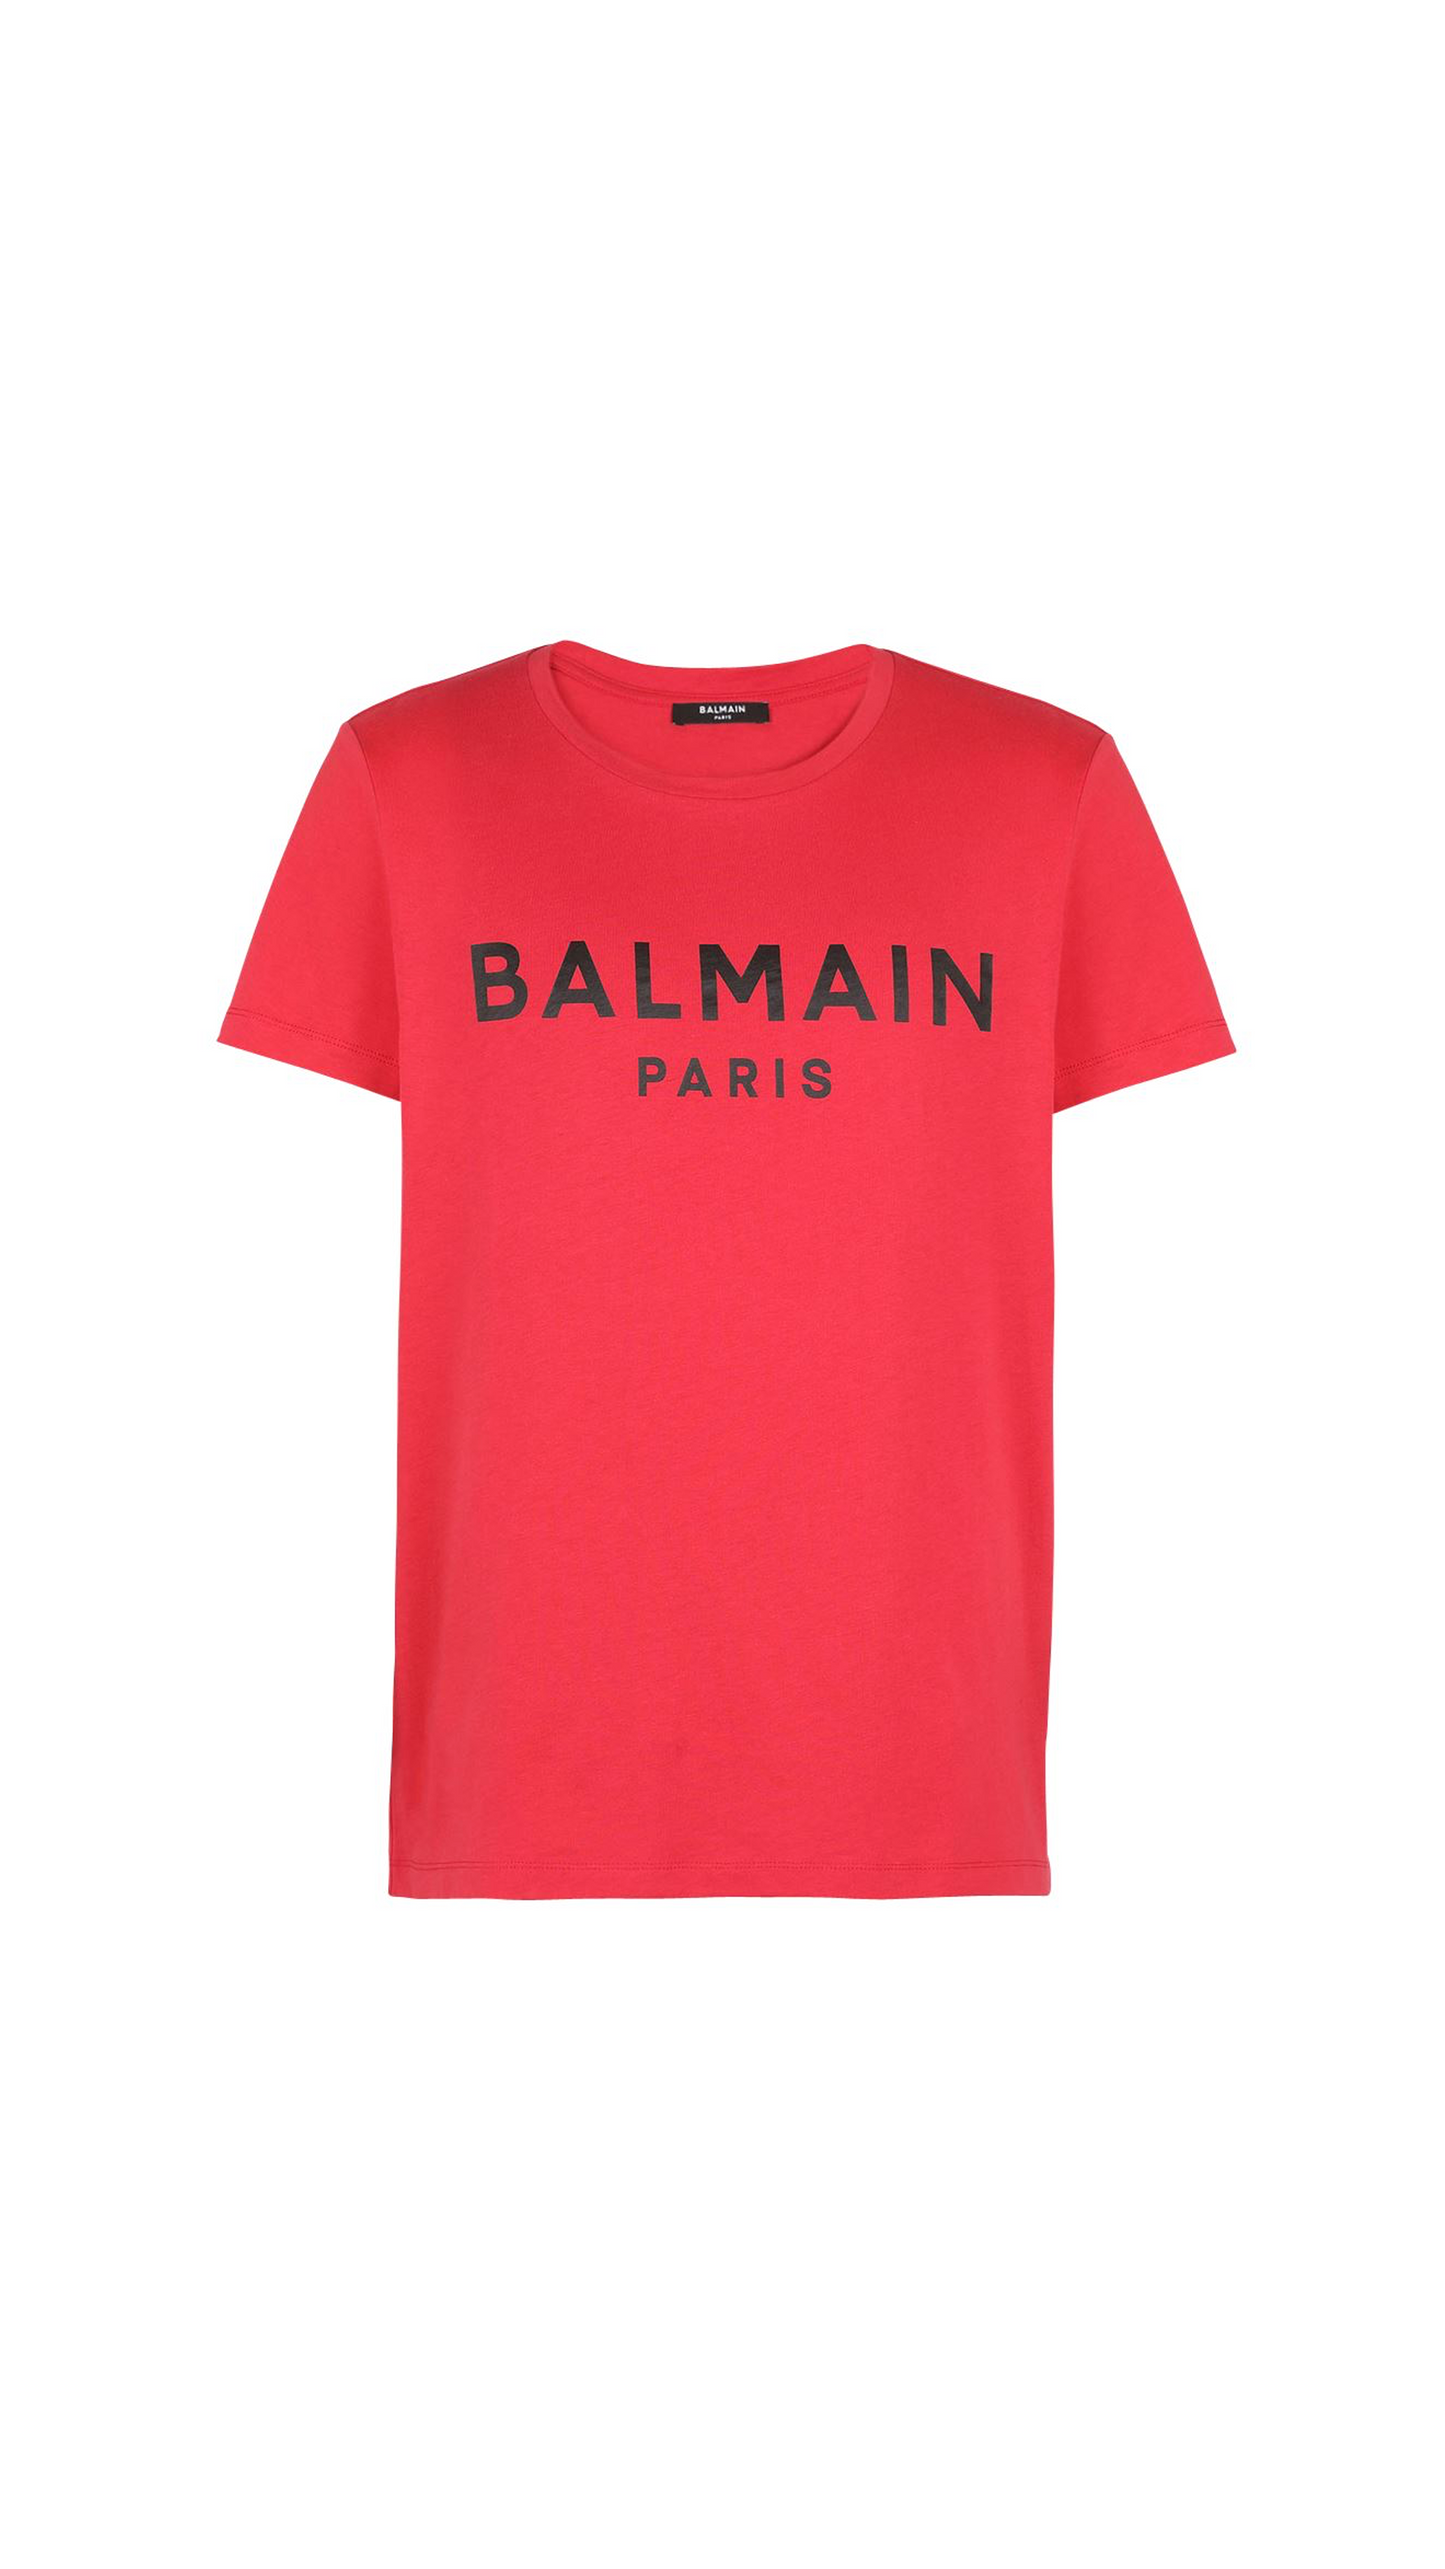 Cotton T-shirt with Balmain Paris Logo Print - Red